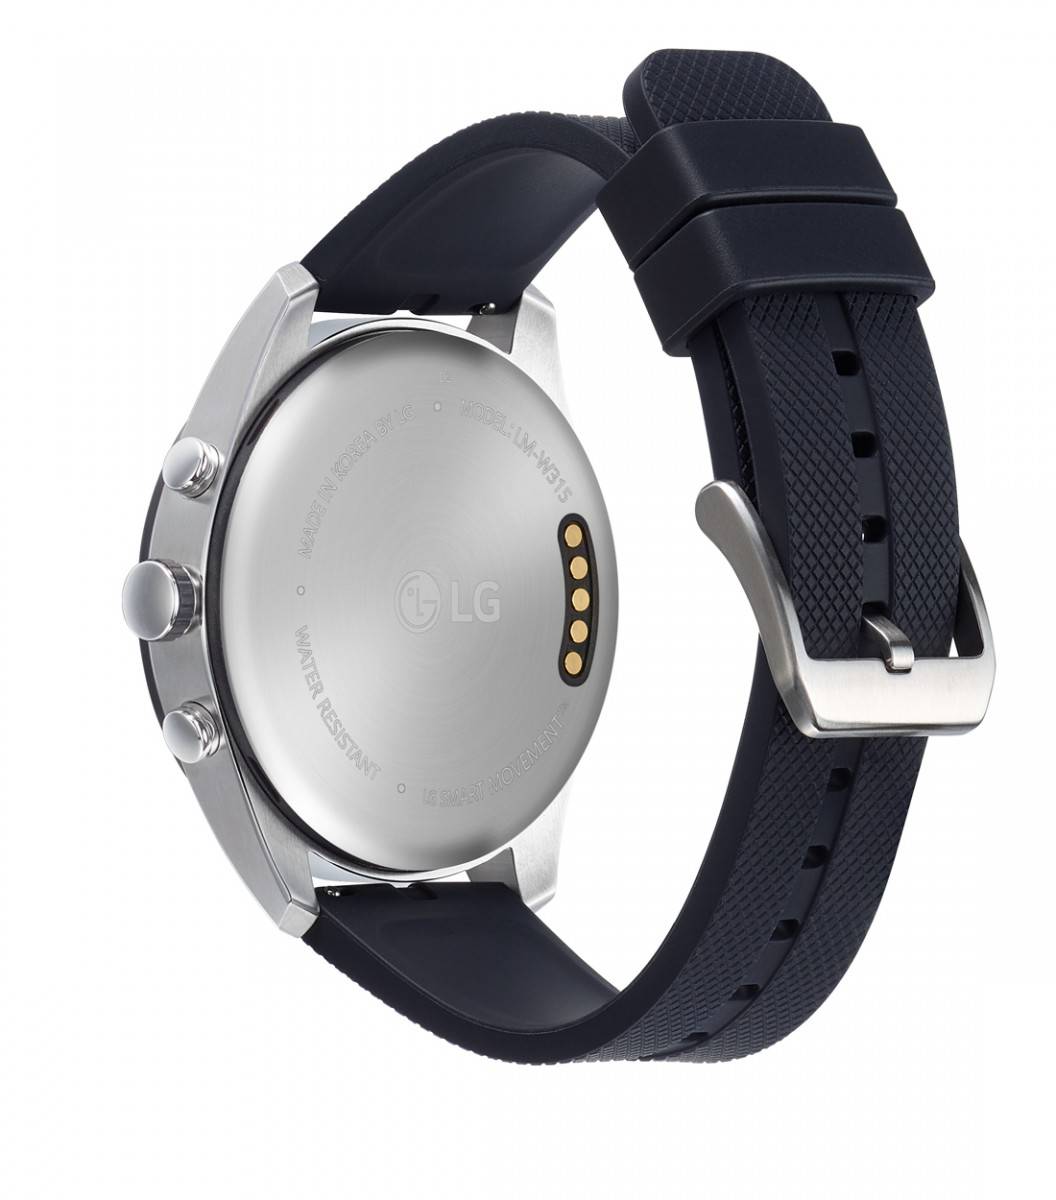 LG-Watch-W7-1 ال‌جی از ساعت هوشمند هیبریدی W7 رونمایی کرد؛ تلفیقی از سنت و مدرنیته!  